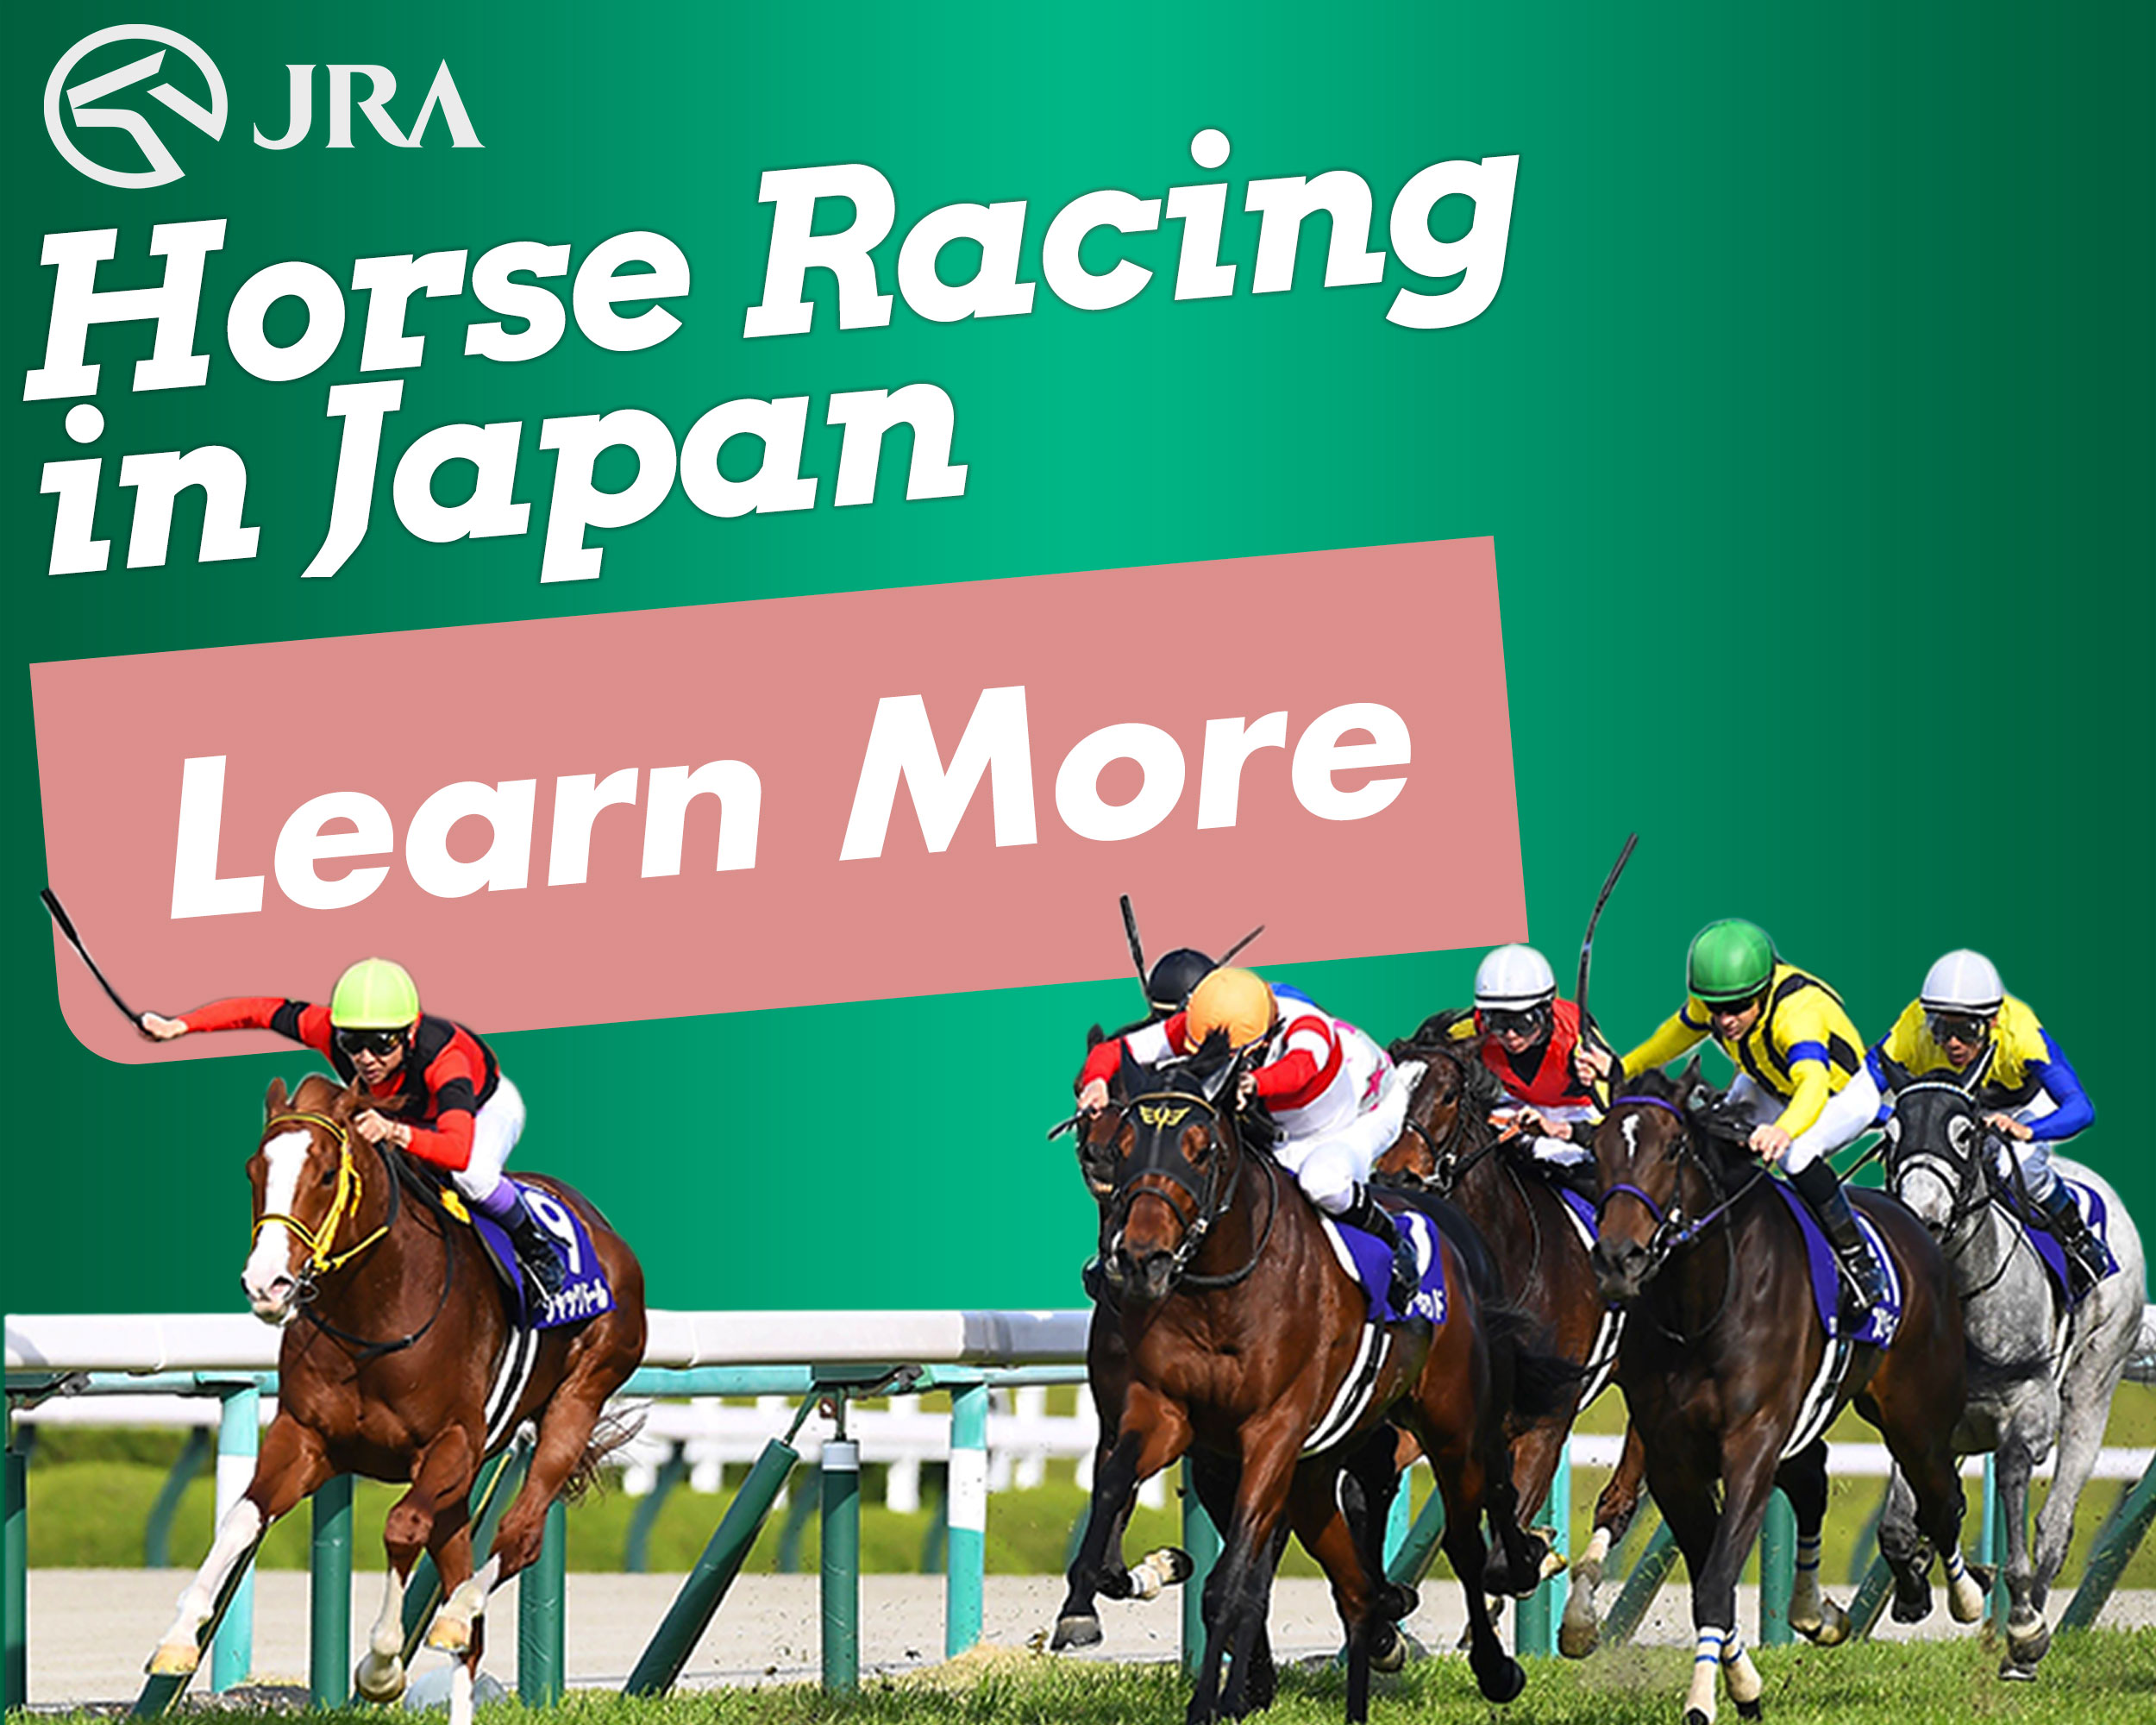 Japan Racing Association